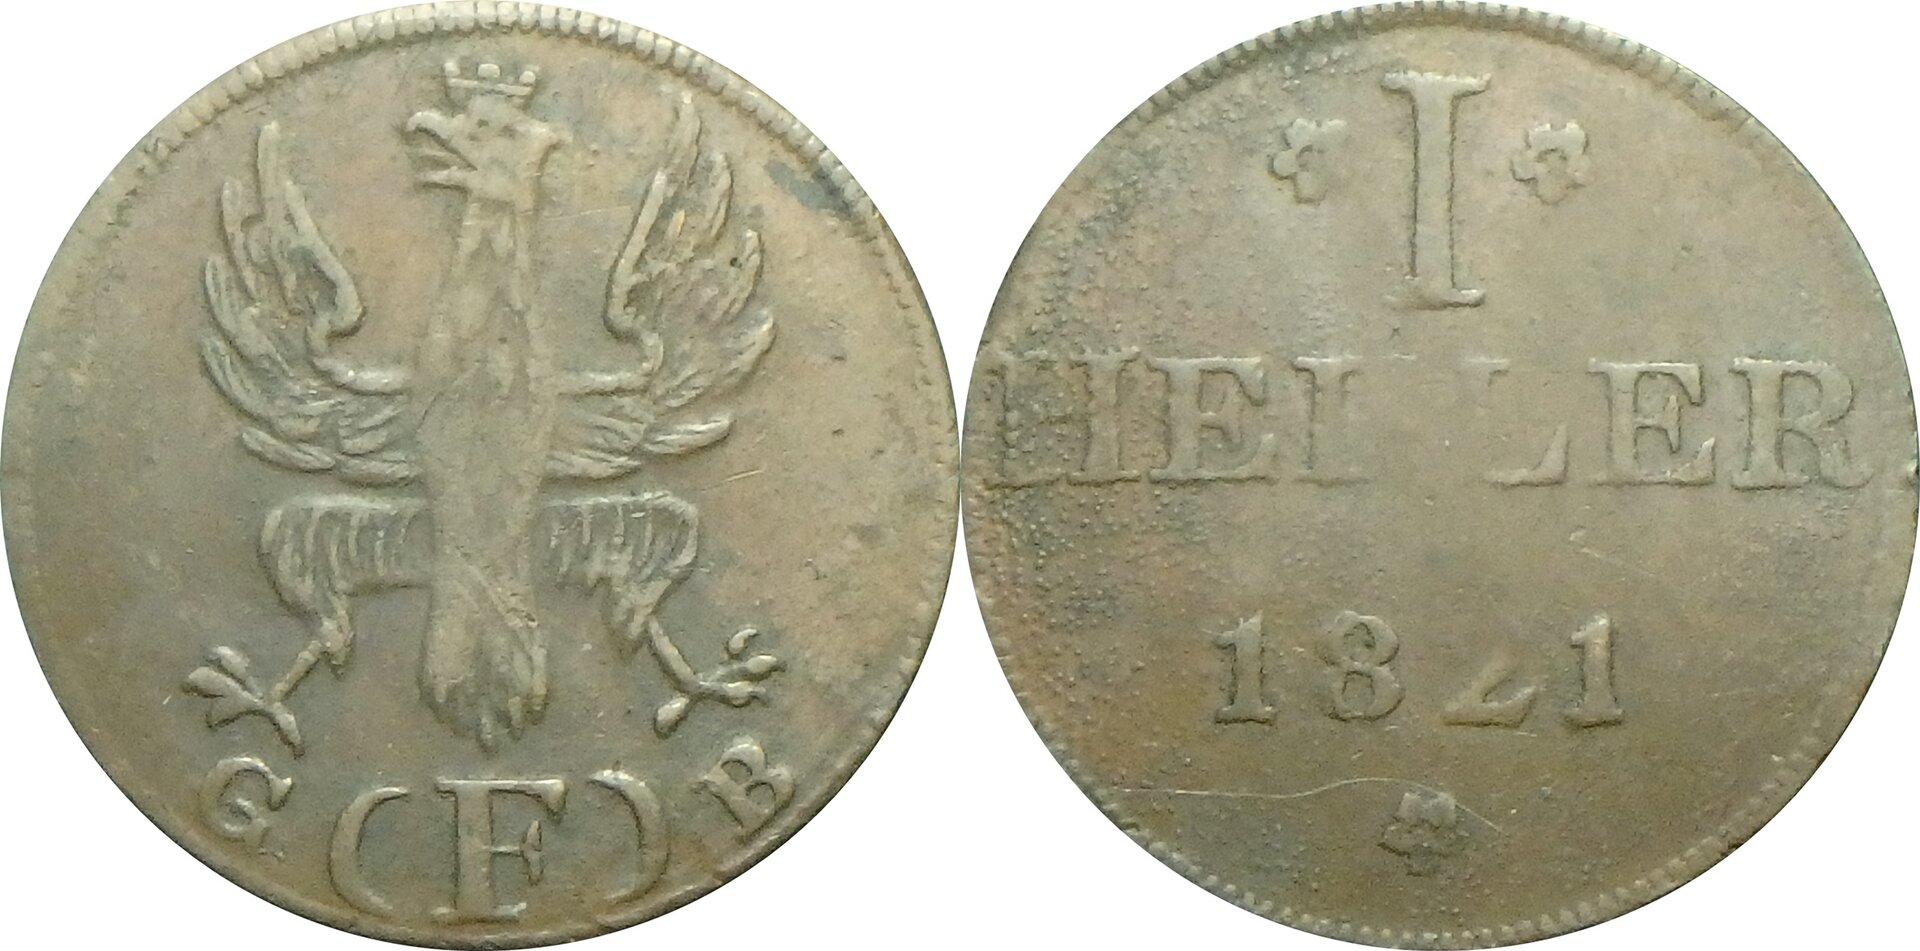 1821 DE-GS 1 h.jpg